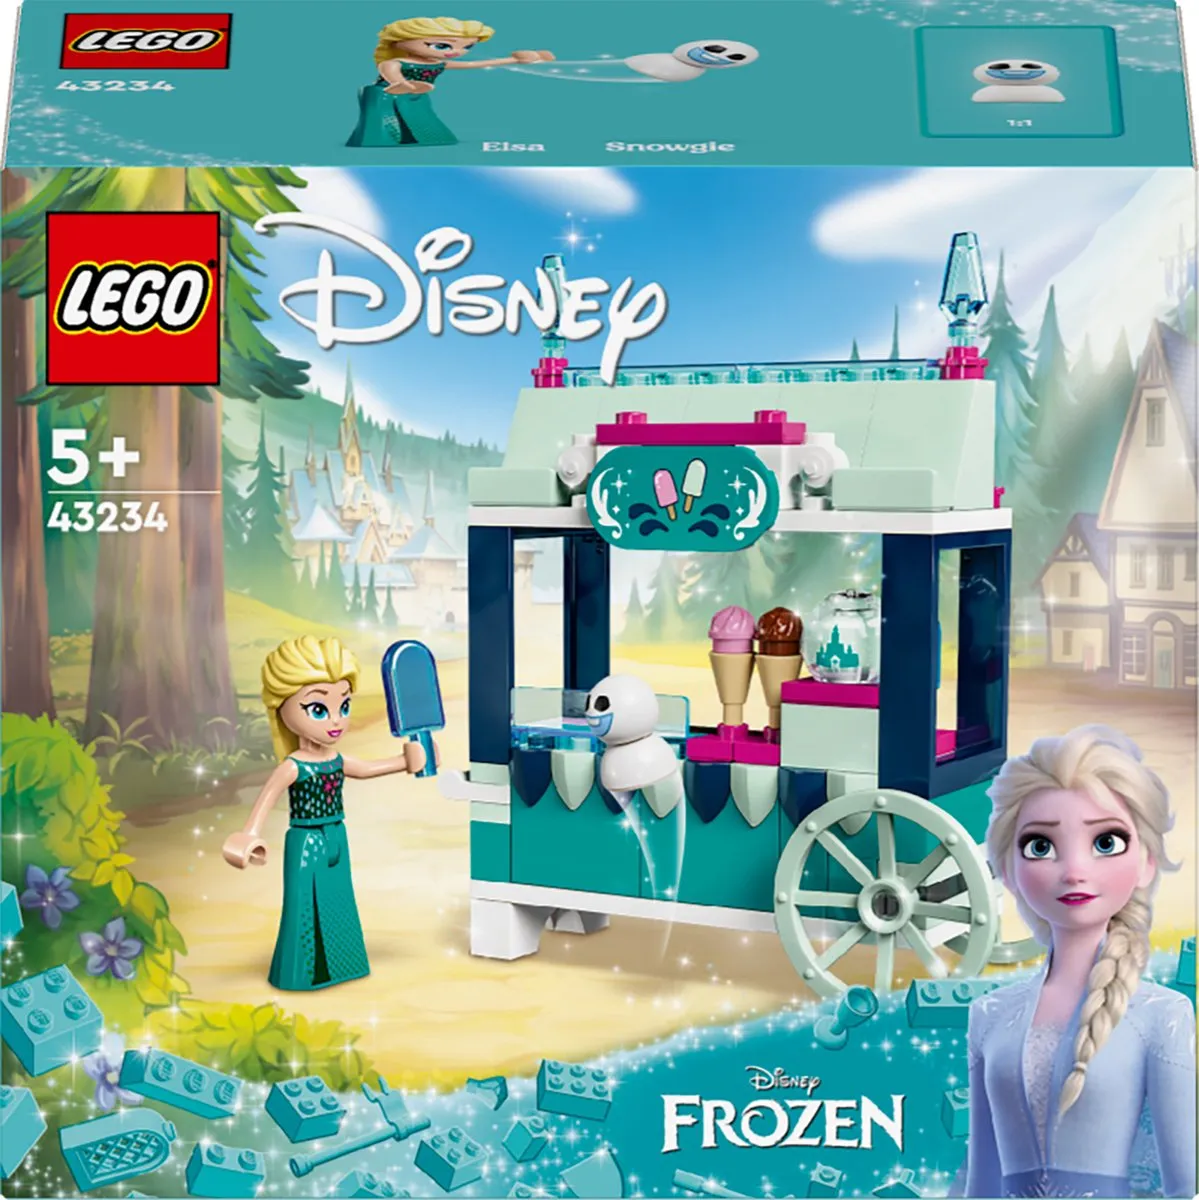 LEGO Disney Princess Elsa's Frozen traktaties - 43234 speelgoed